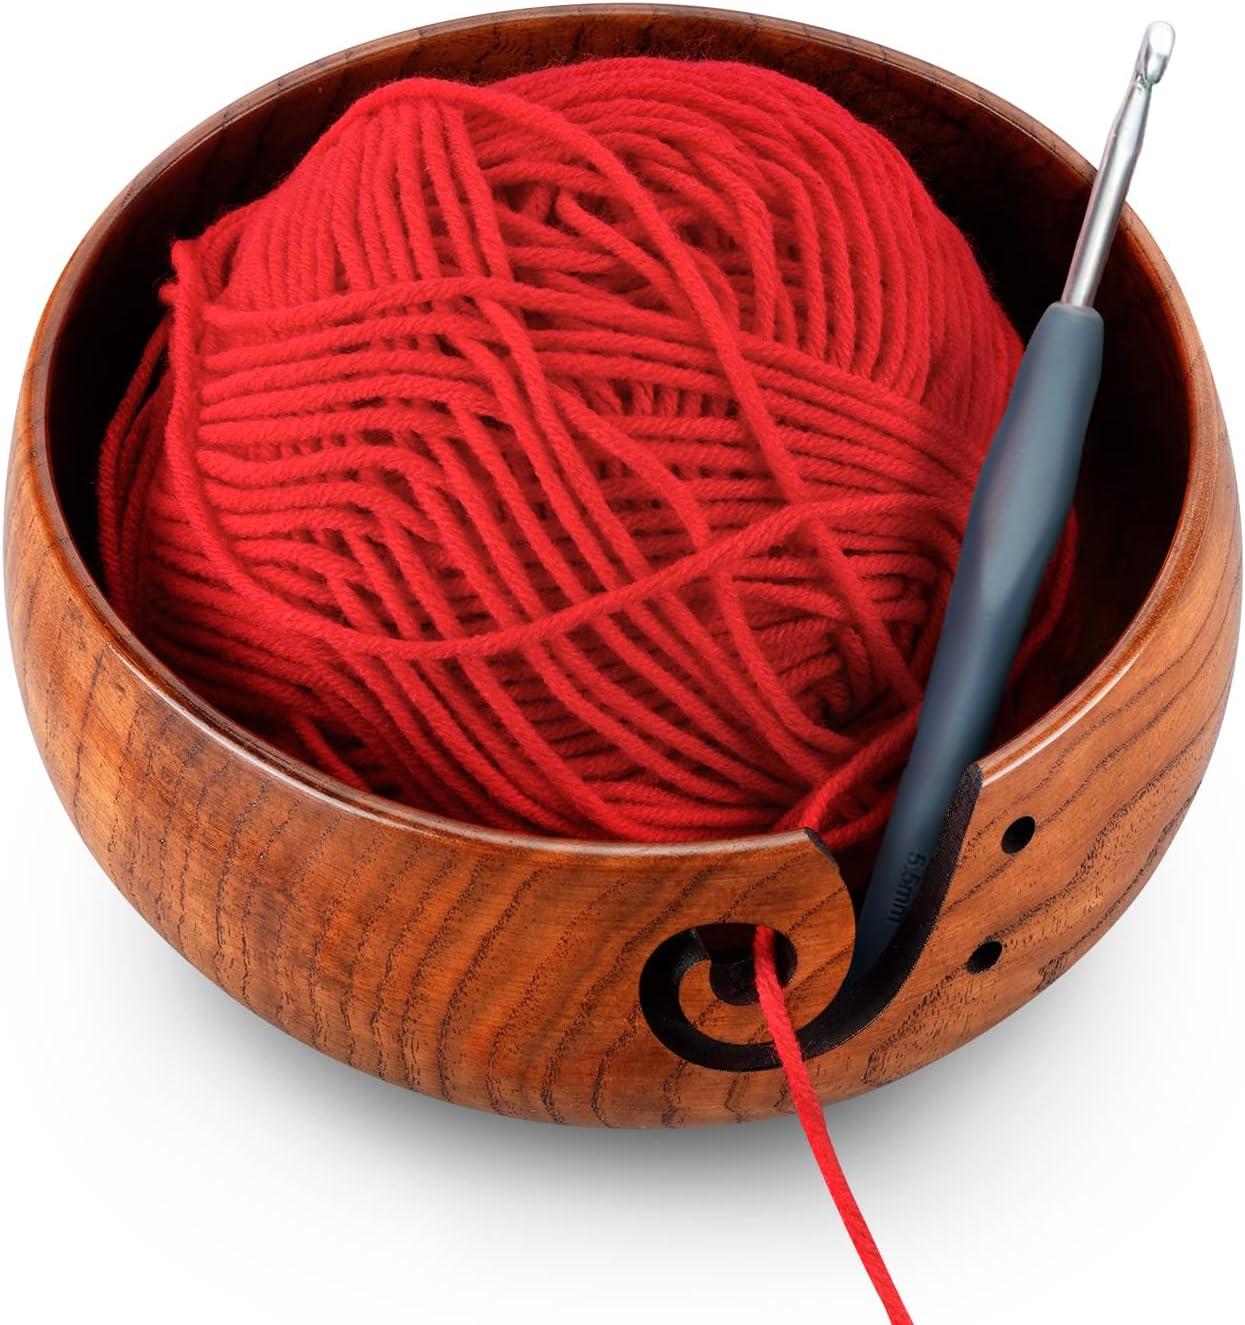 Are yarn bowl worth it? : r/crochet